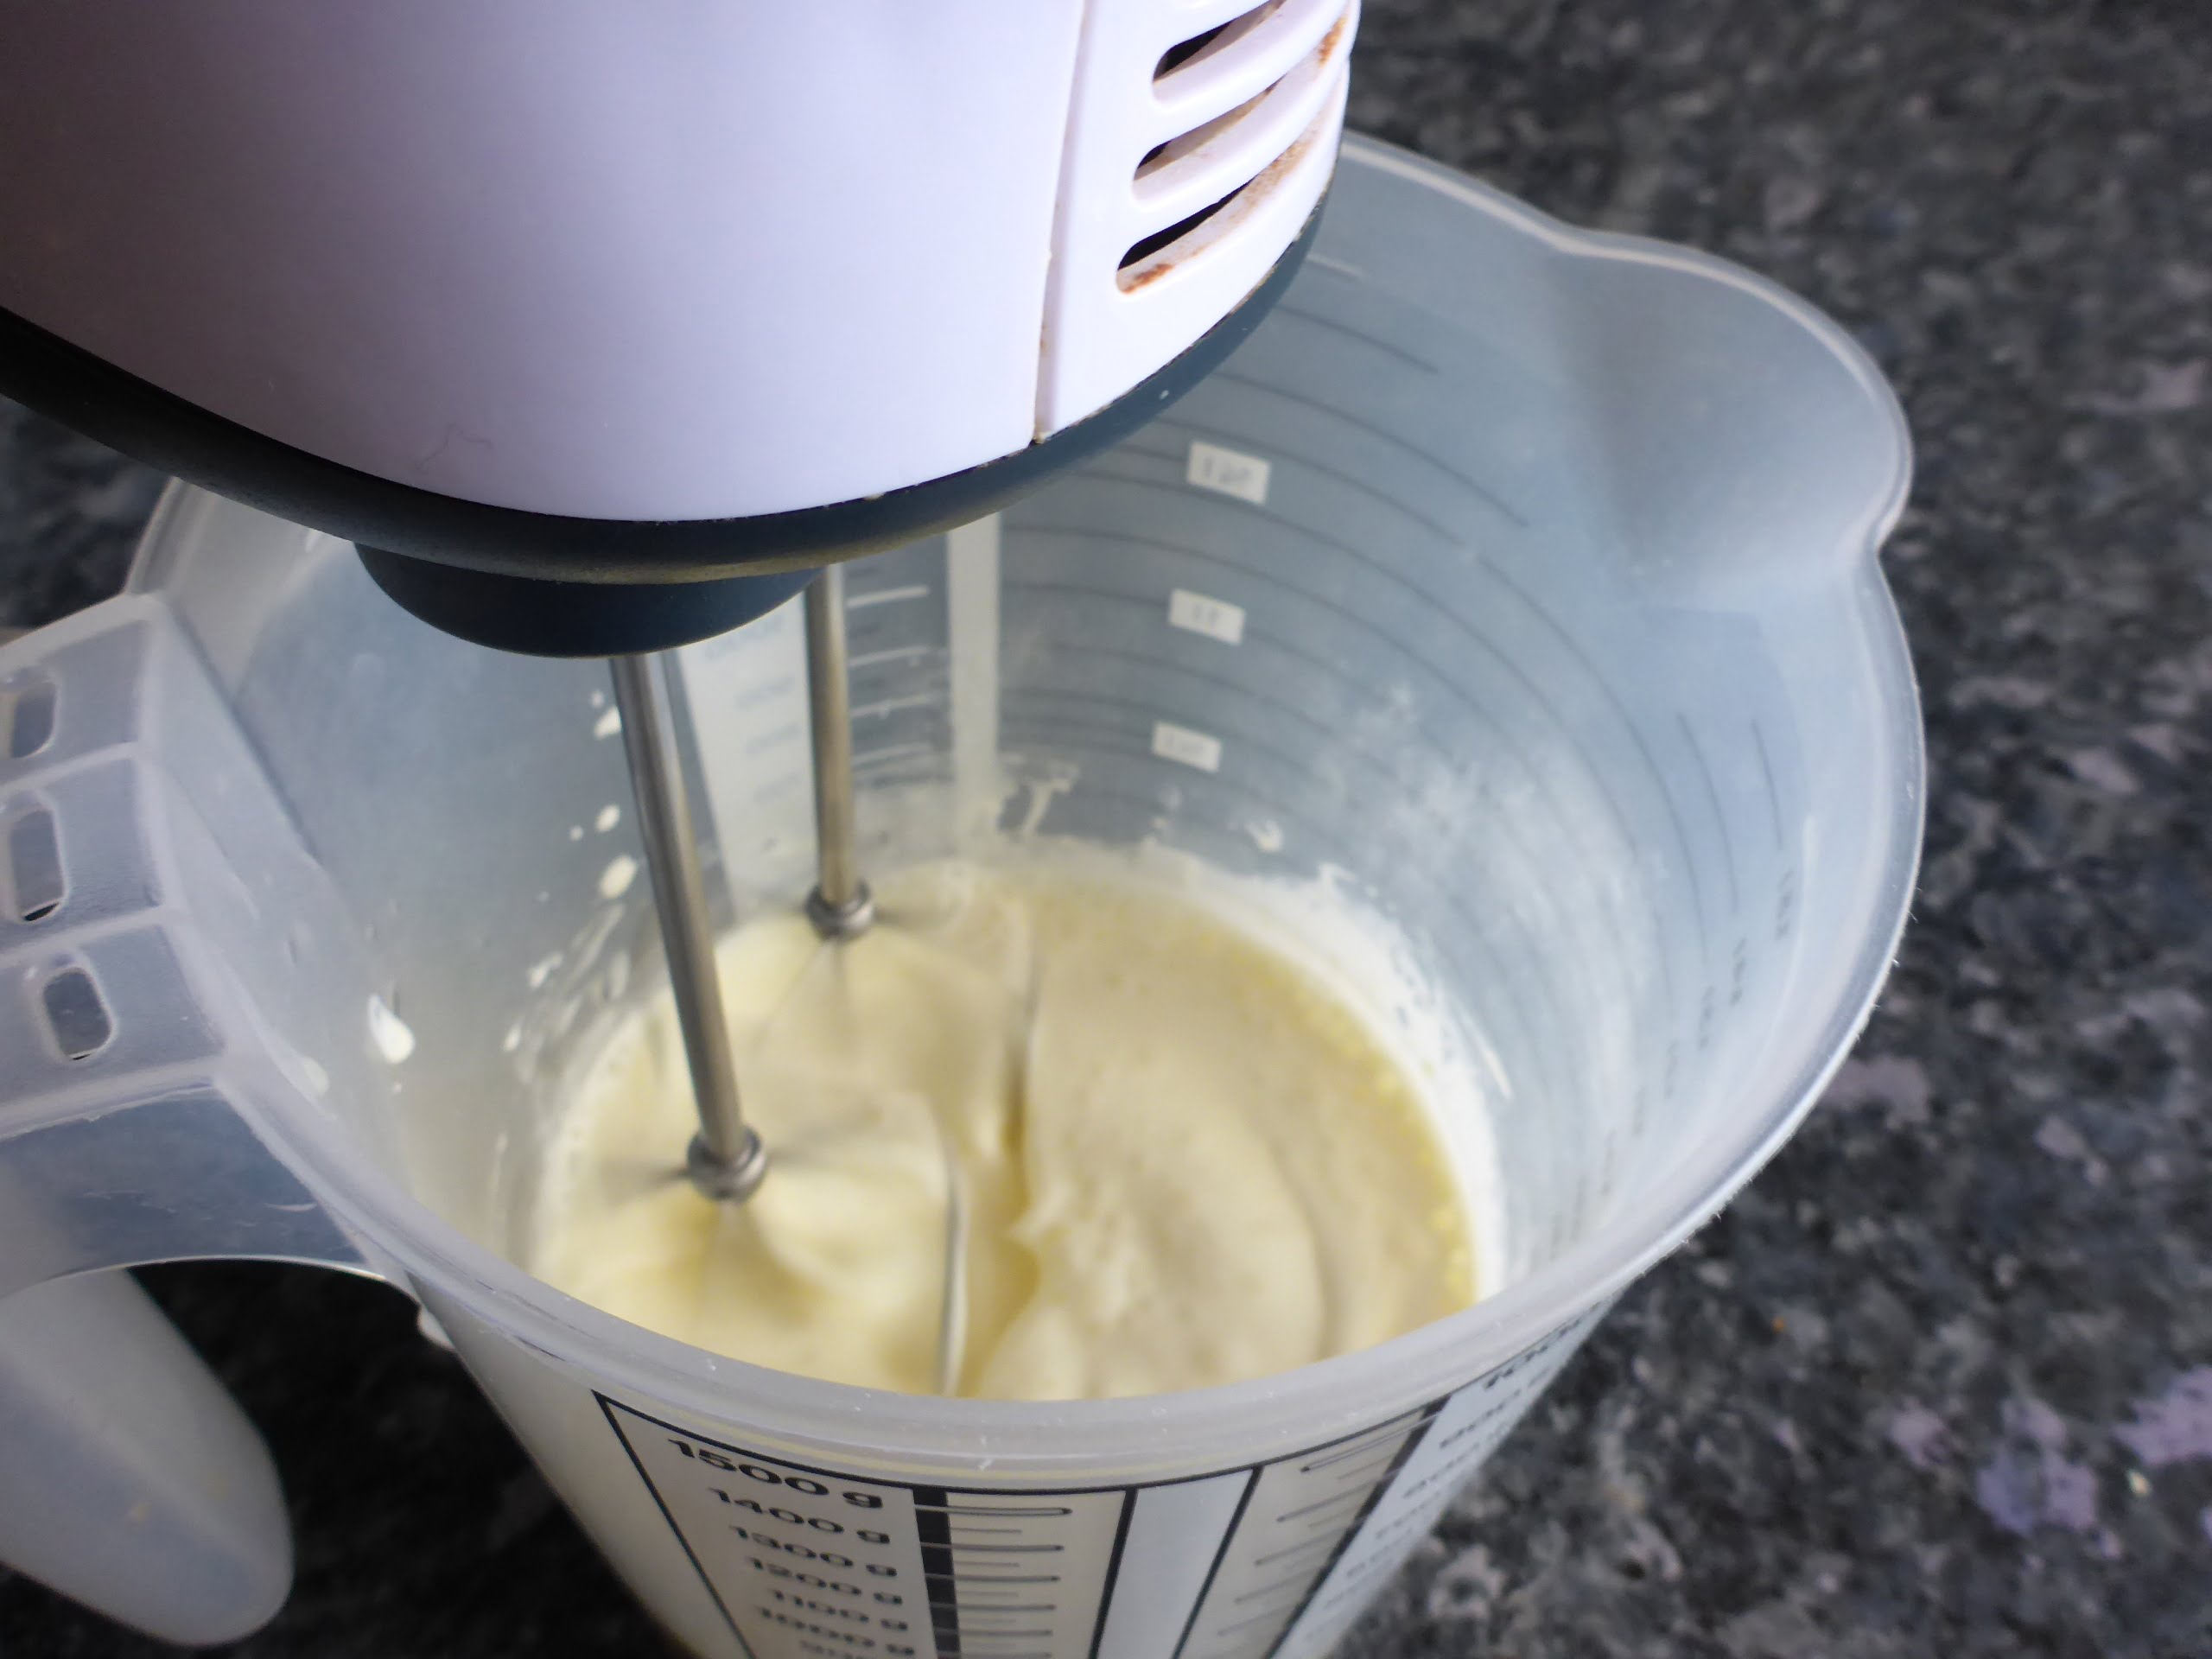 Schritt-für-Schritt-Anleitung für die Zubereitung von Vanilleeis ohne Eier: Die Schlagsahne wird steif geschlagen, um Volumen und eine cremige Textur zu erzeugen. 